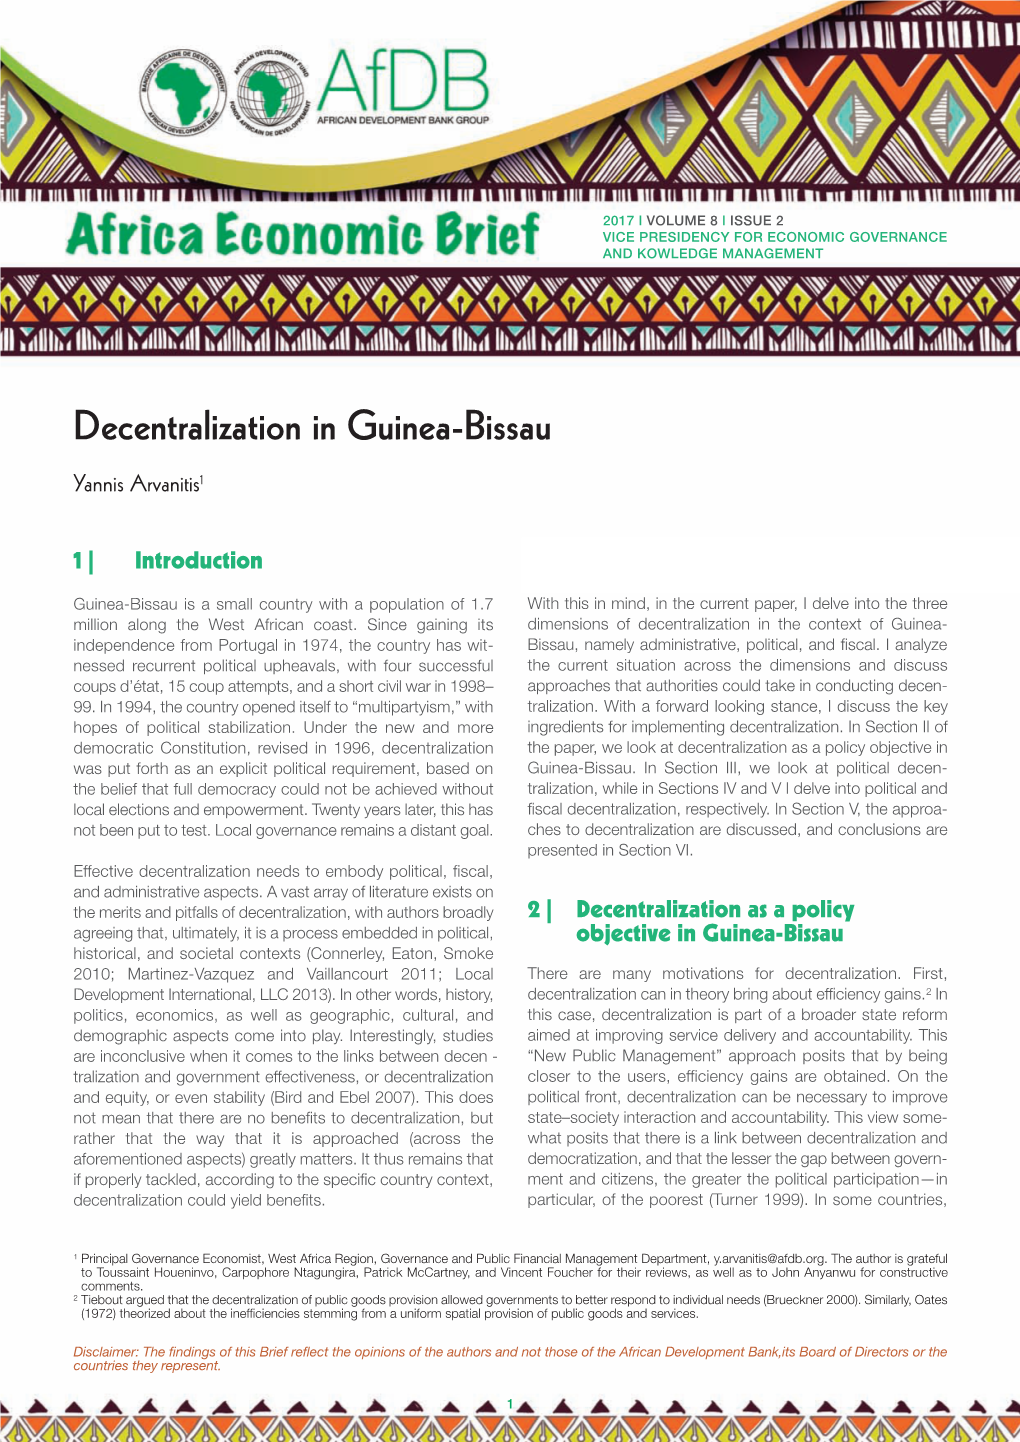 Decentralization in Guinea-Bissau